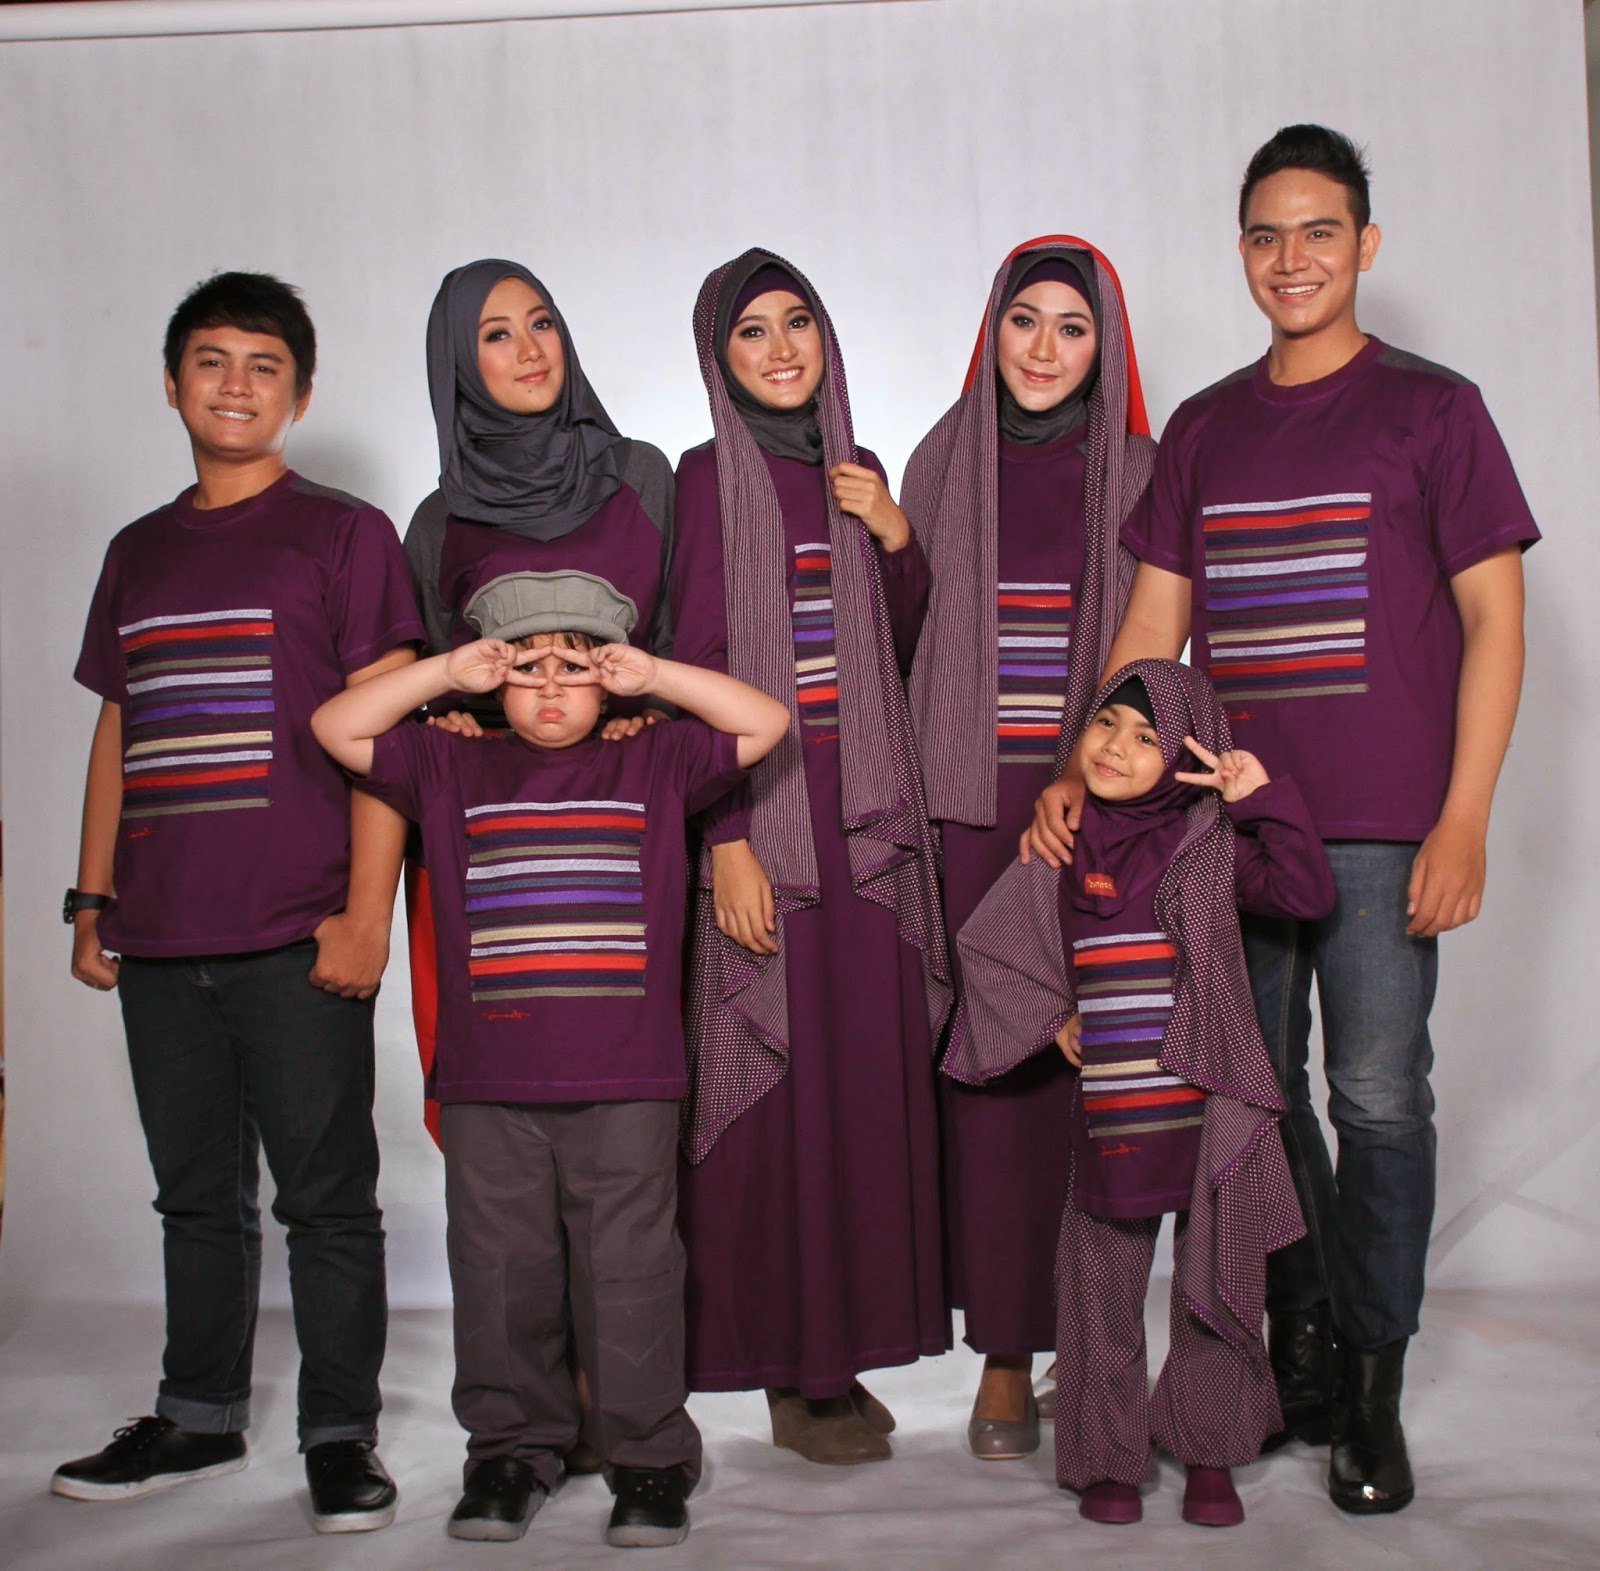 Bentuk Baju Lebaran Keluarga 2018 Ffdn Model Baju Keluarga Untuk Hari Raya Lebaran 2018